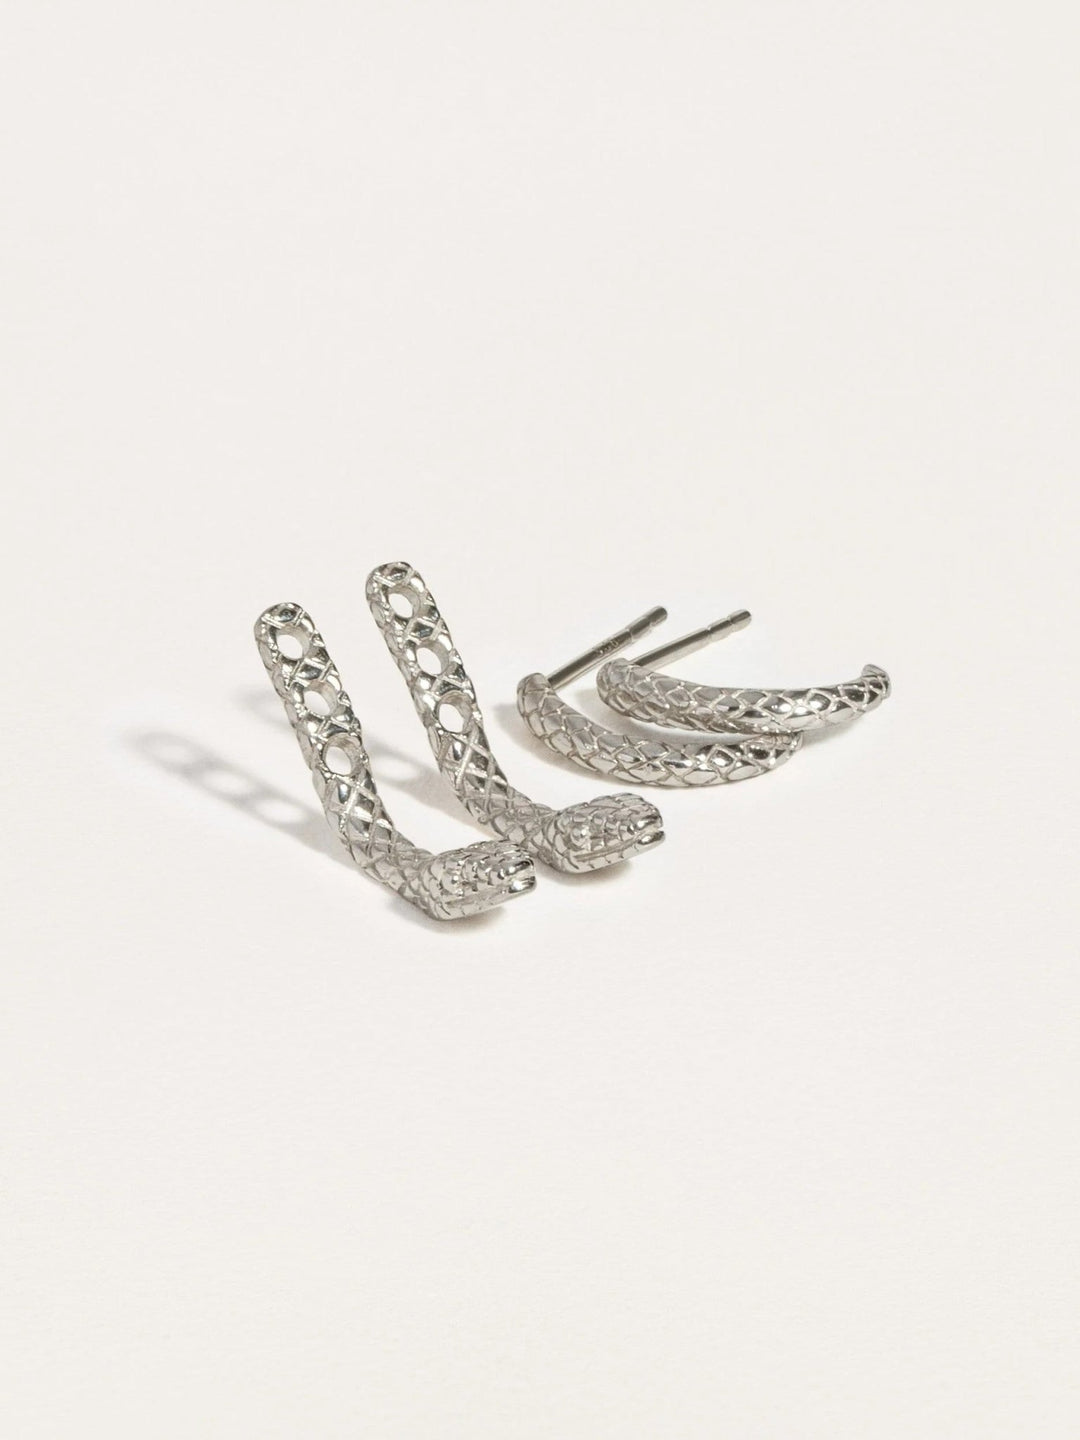 Unax Men's Earring Snake - Pair925 Sterling SilverAnimal Earringsdainty earringsLunai Jewelry